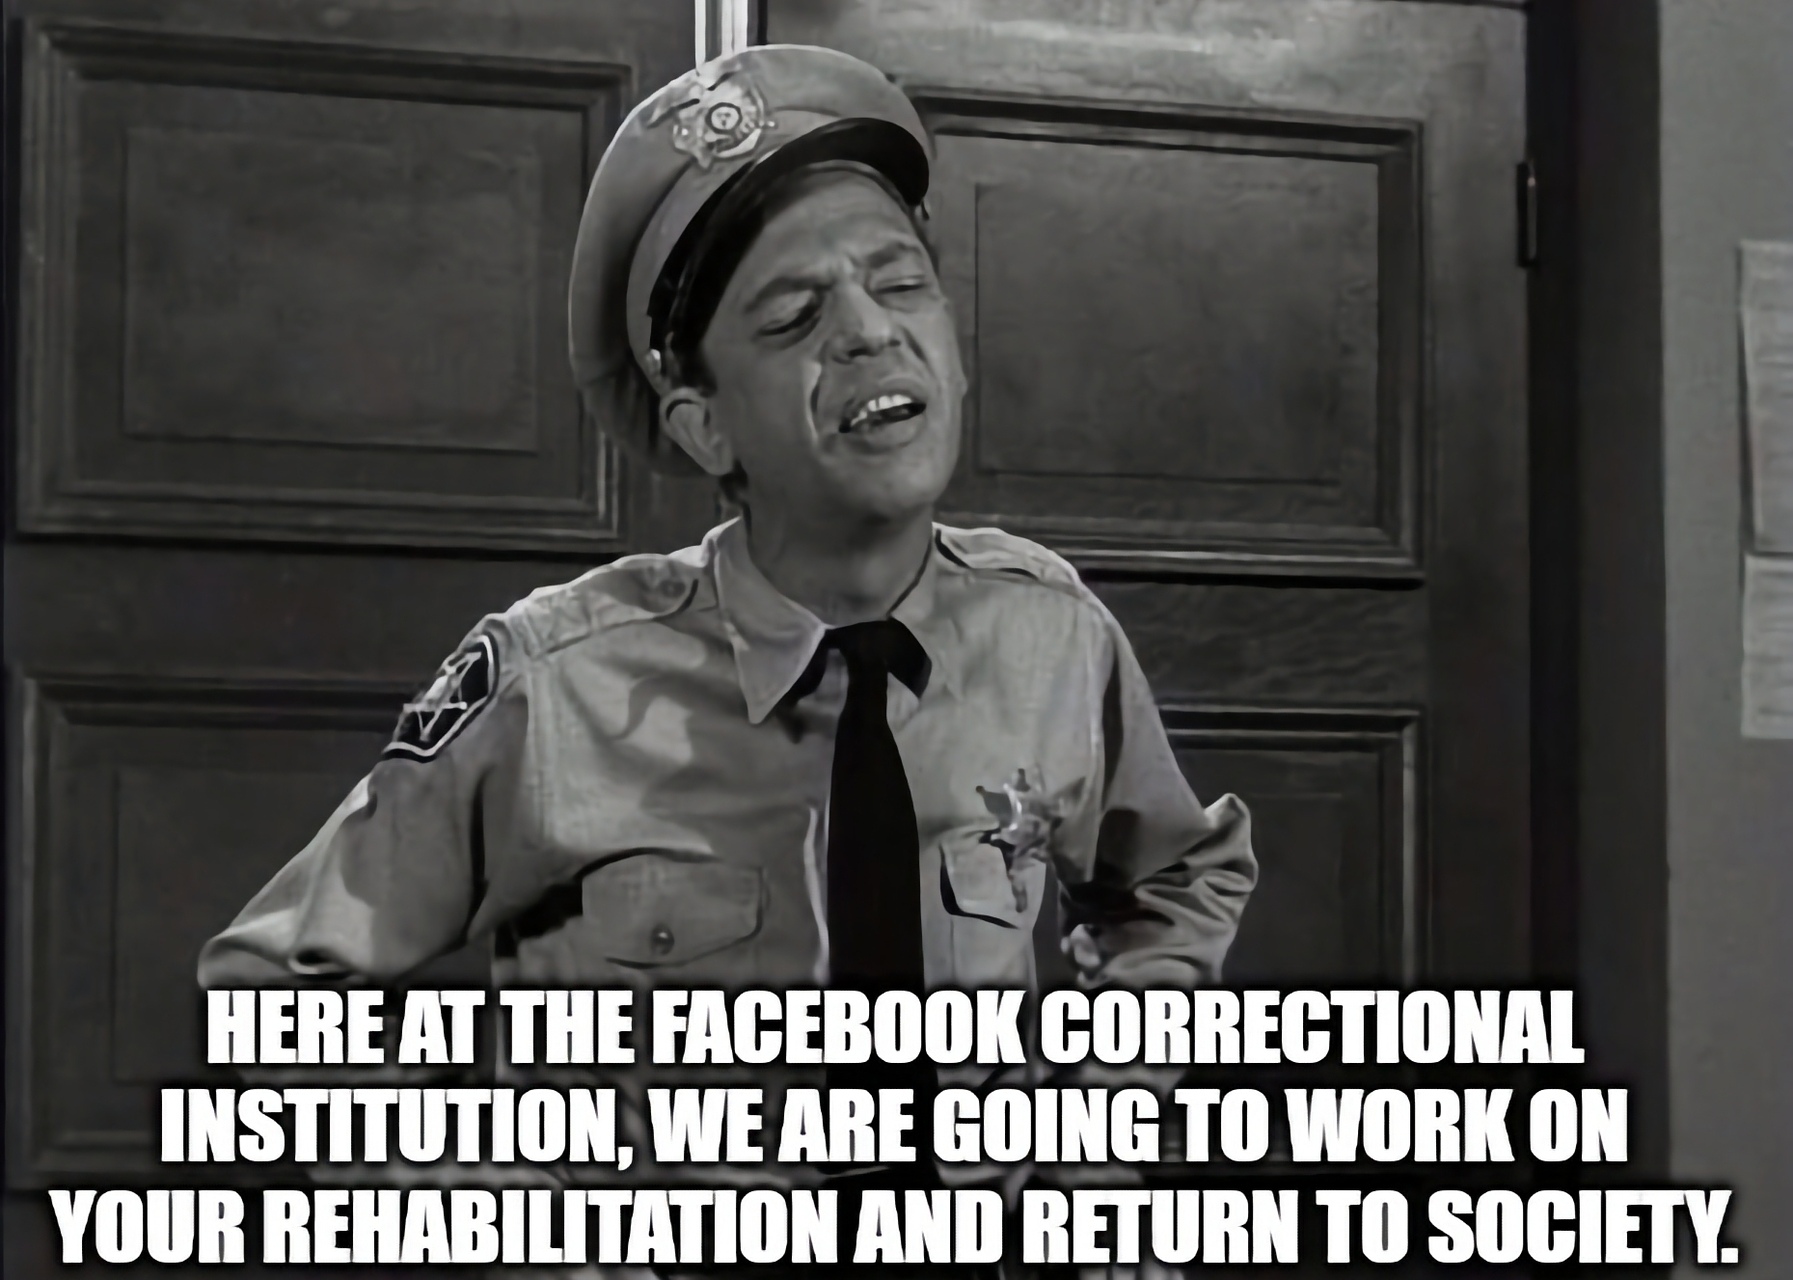 Facebook: un “meme” (ovvero una vignetta satirica su Internet) ispirato alle politiche di moderazione di Facebook, giudicate molto discutibili (Immagine: imgflip.com)